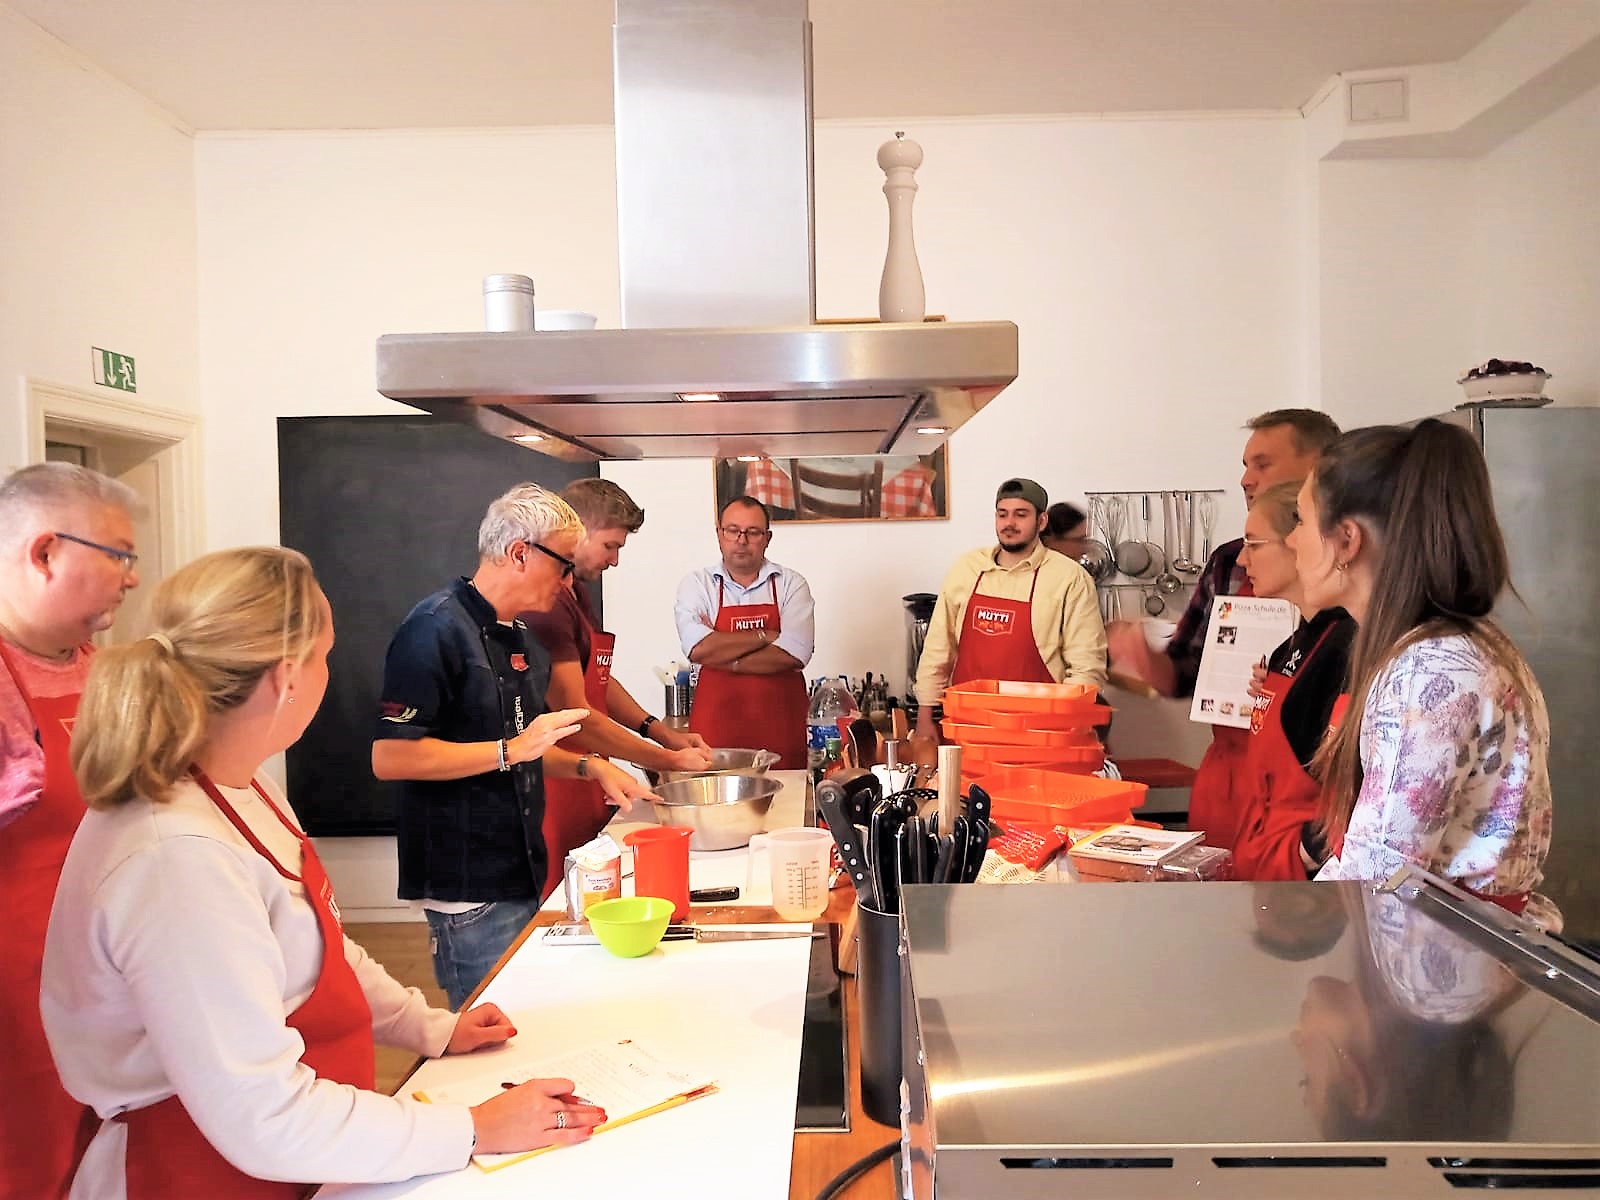 17.09.2022 Berlin, Seminar über die Grundlagen der Herstellung eines Qualitäts-Pizzateigs